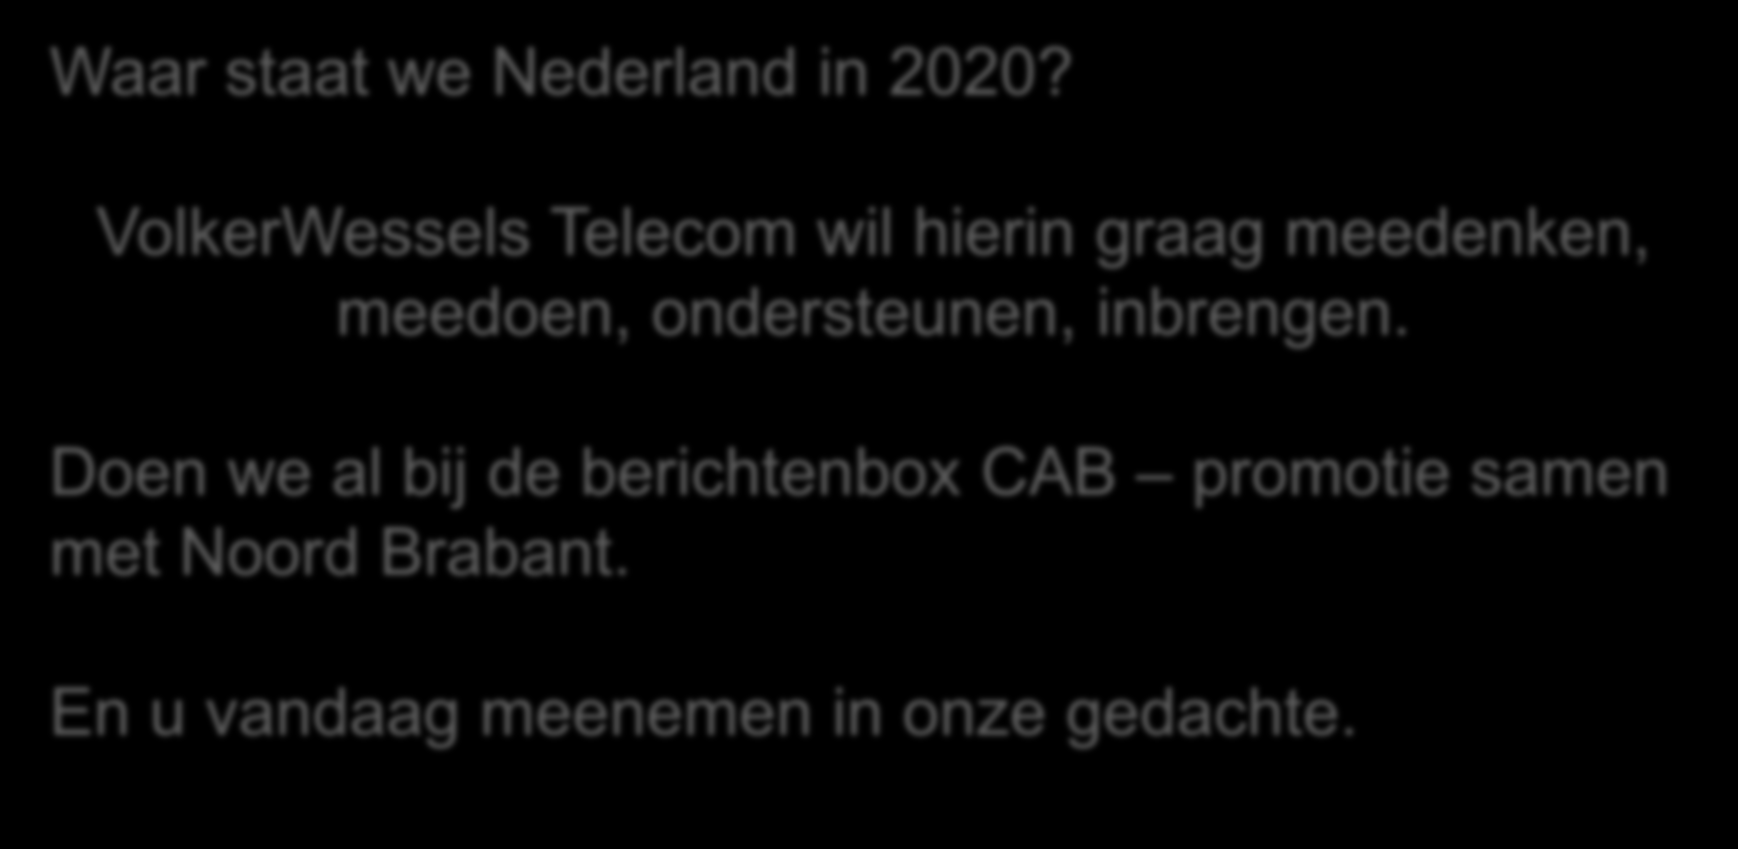 Waar staat we Nederland in 2020?